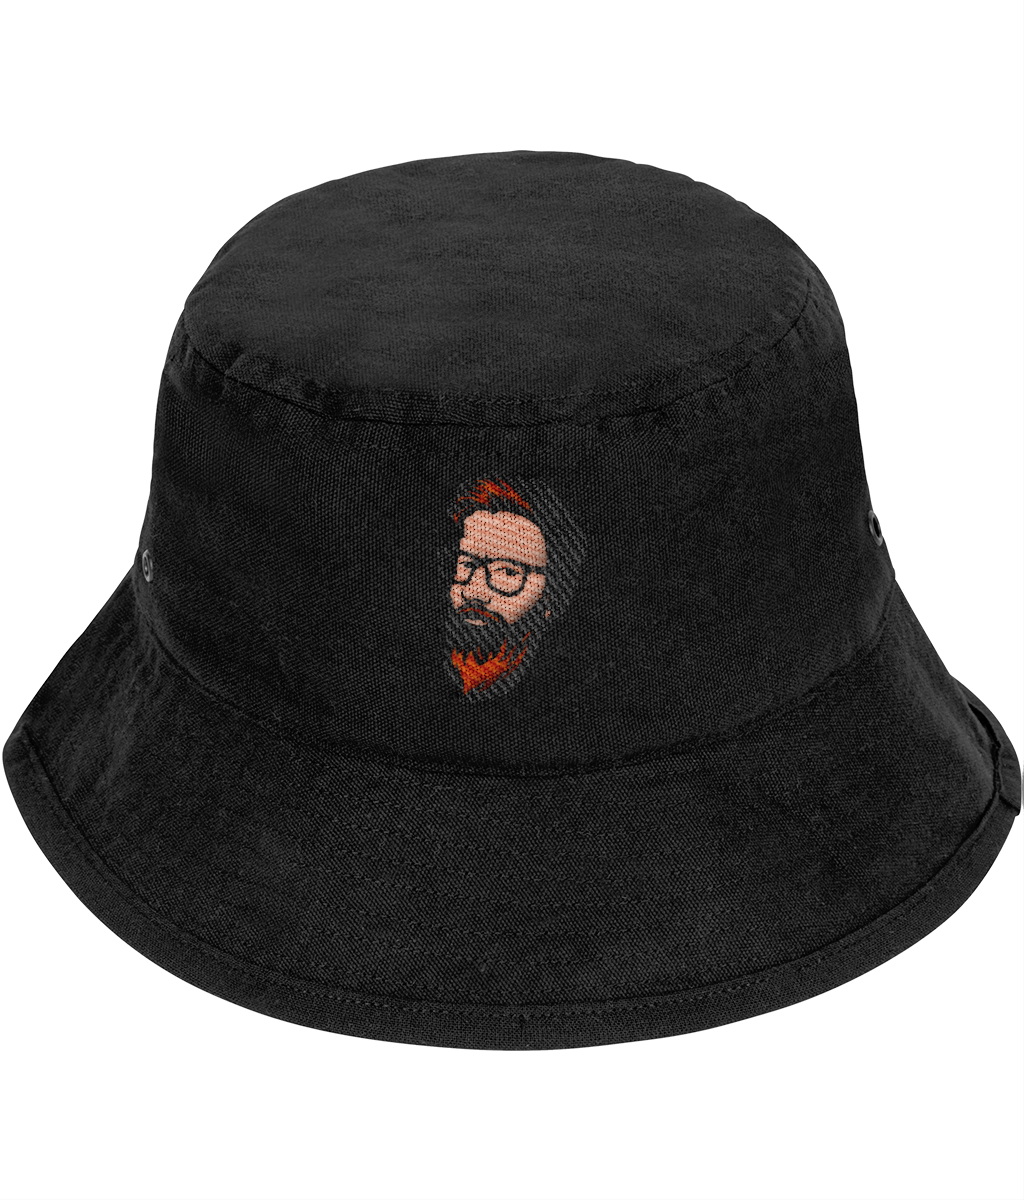 The Brophers Grimm Bucket Hat